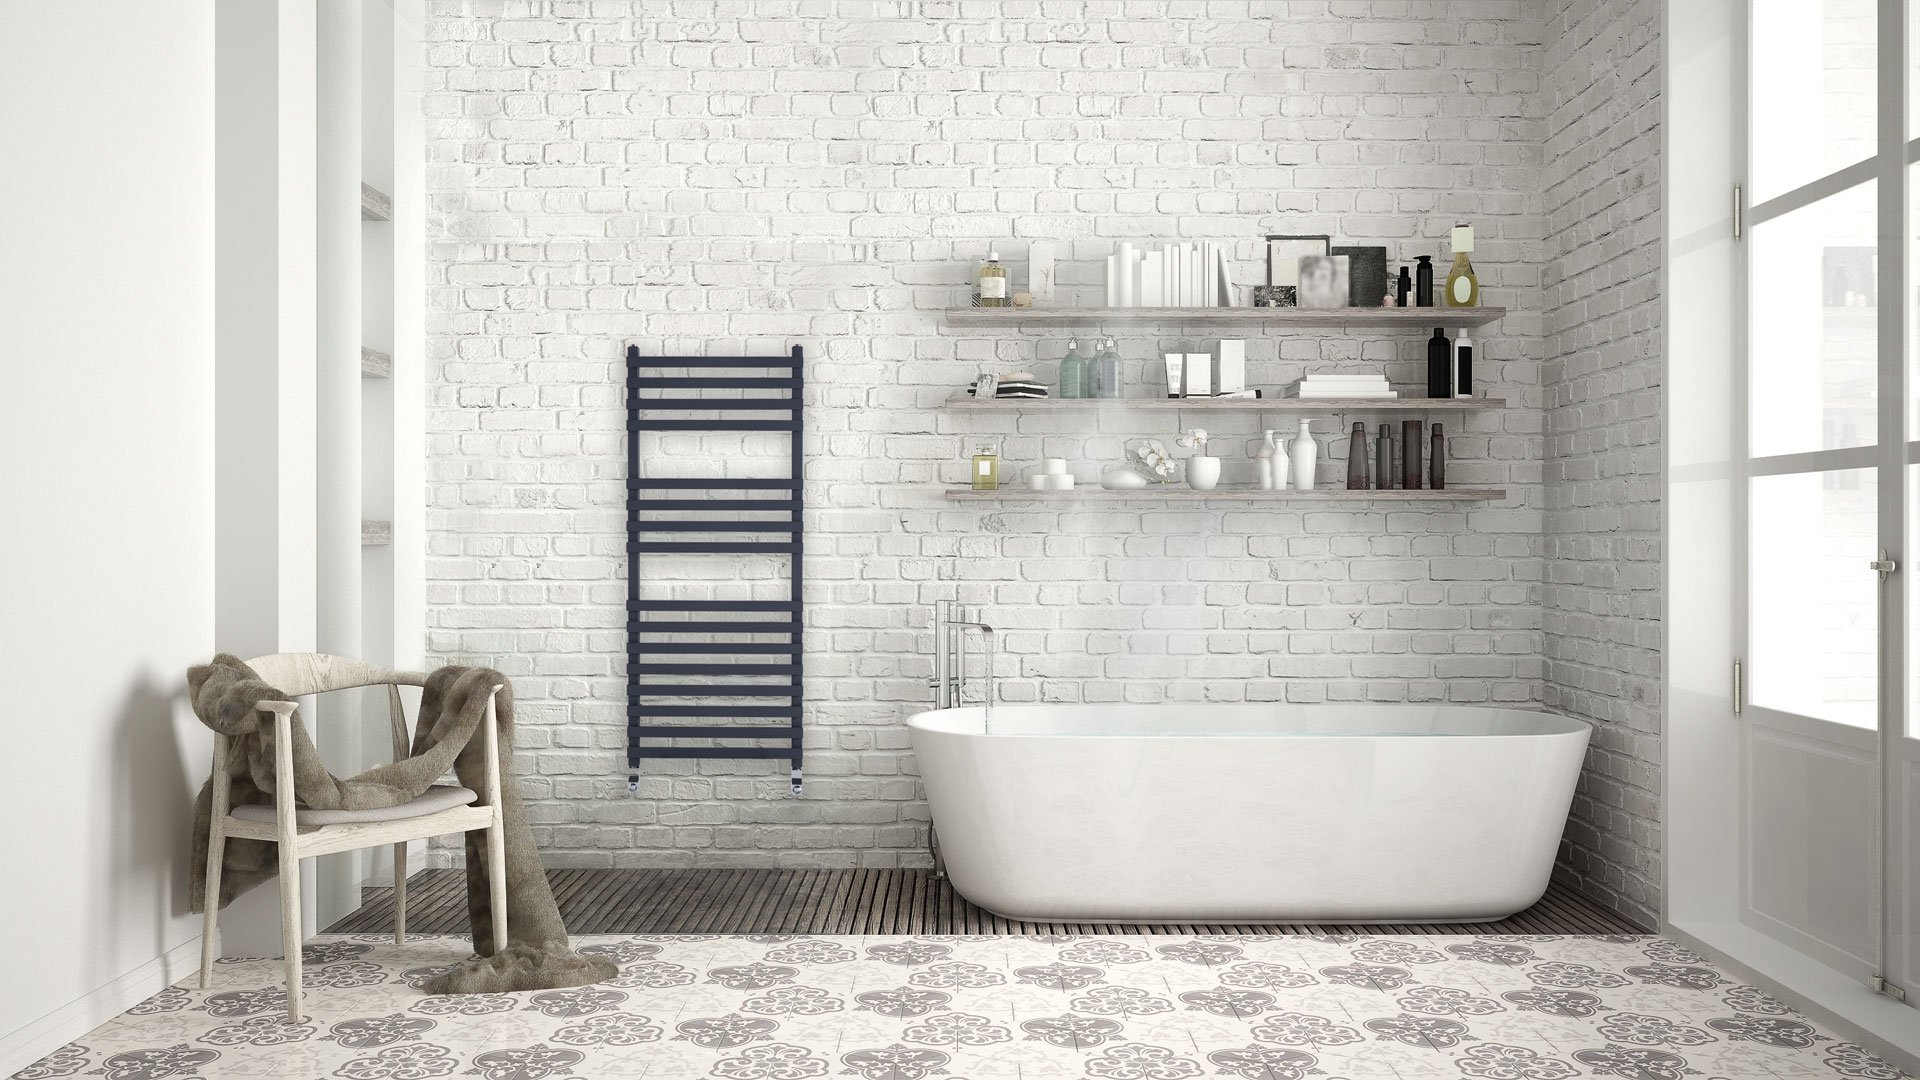 WK360-CGI-Bathroom-Urban-modern-bath-with-anthracite-radiator.jpg